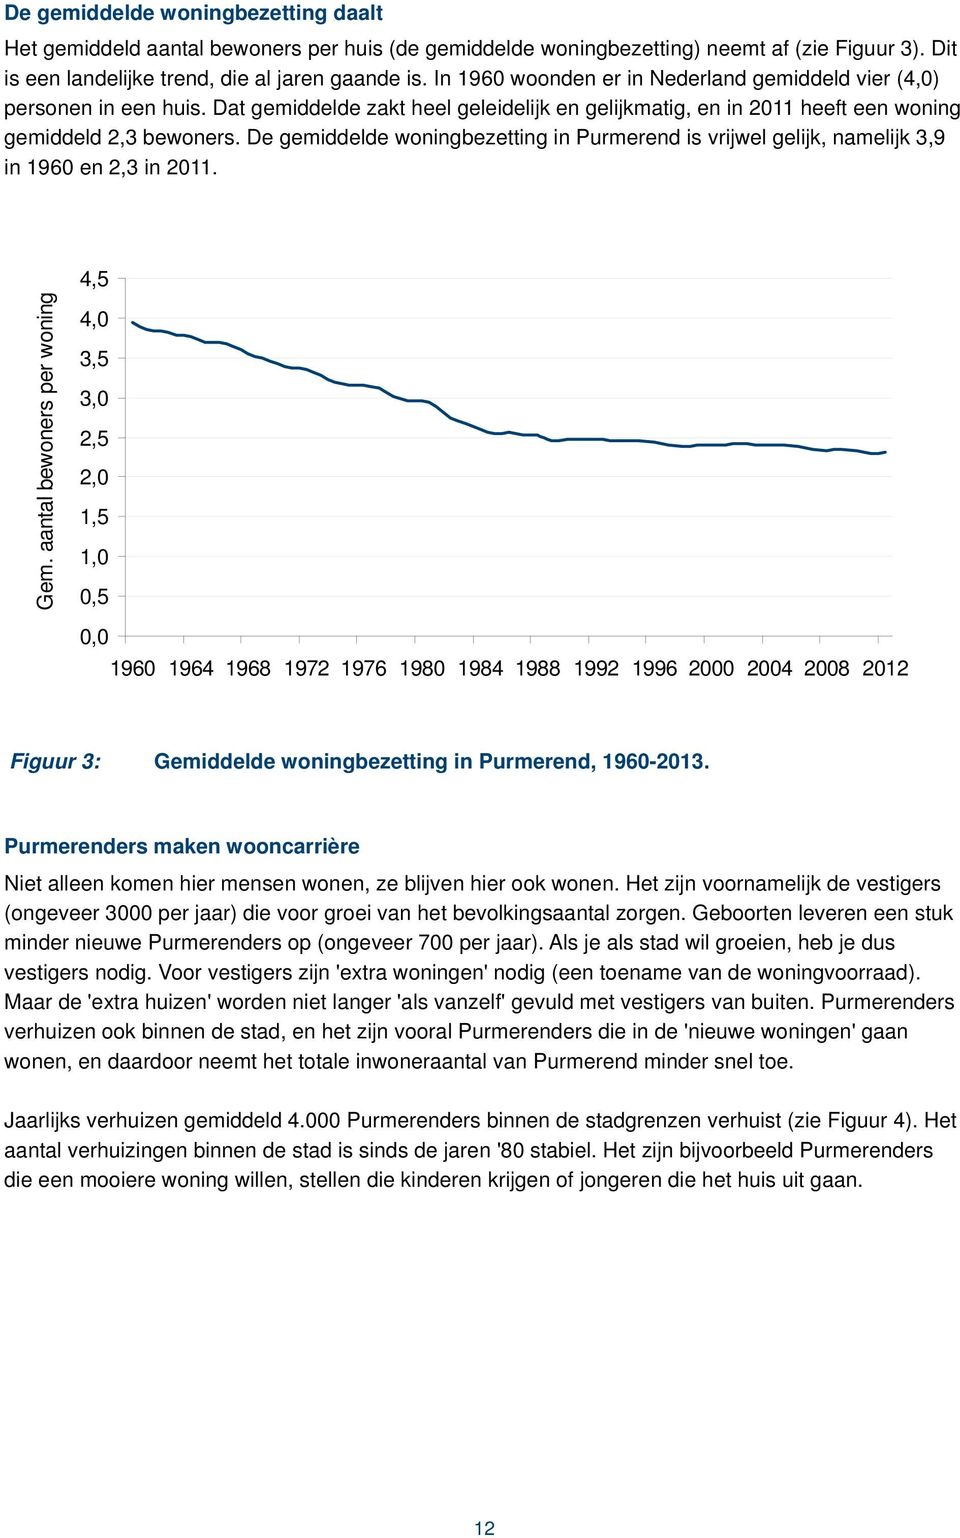 De gemiddelde woningbezetting in Purmerend is vrijwel gelijk, namelijk 3,9 in 1960 en 2,3 in 2011. Gem.